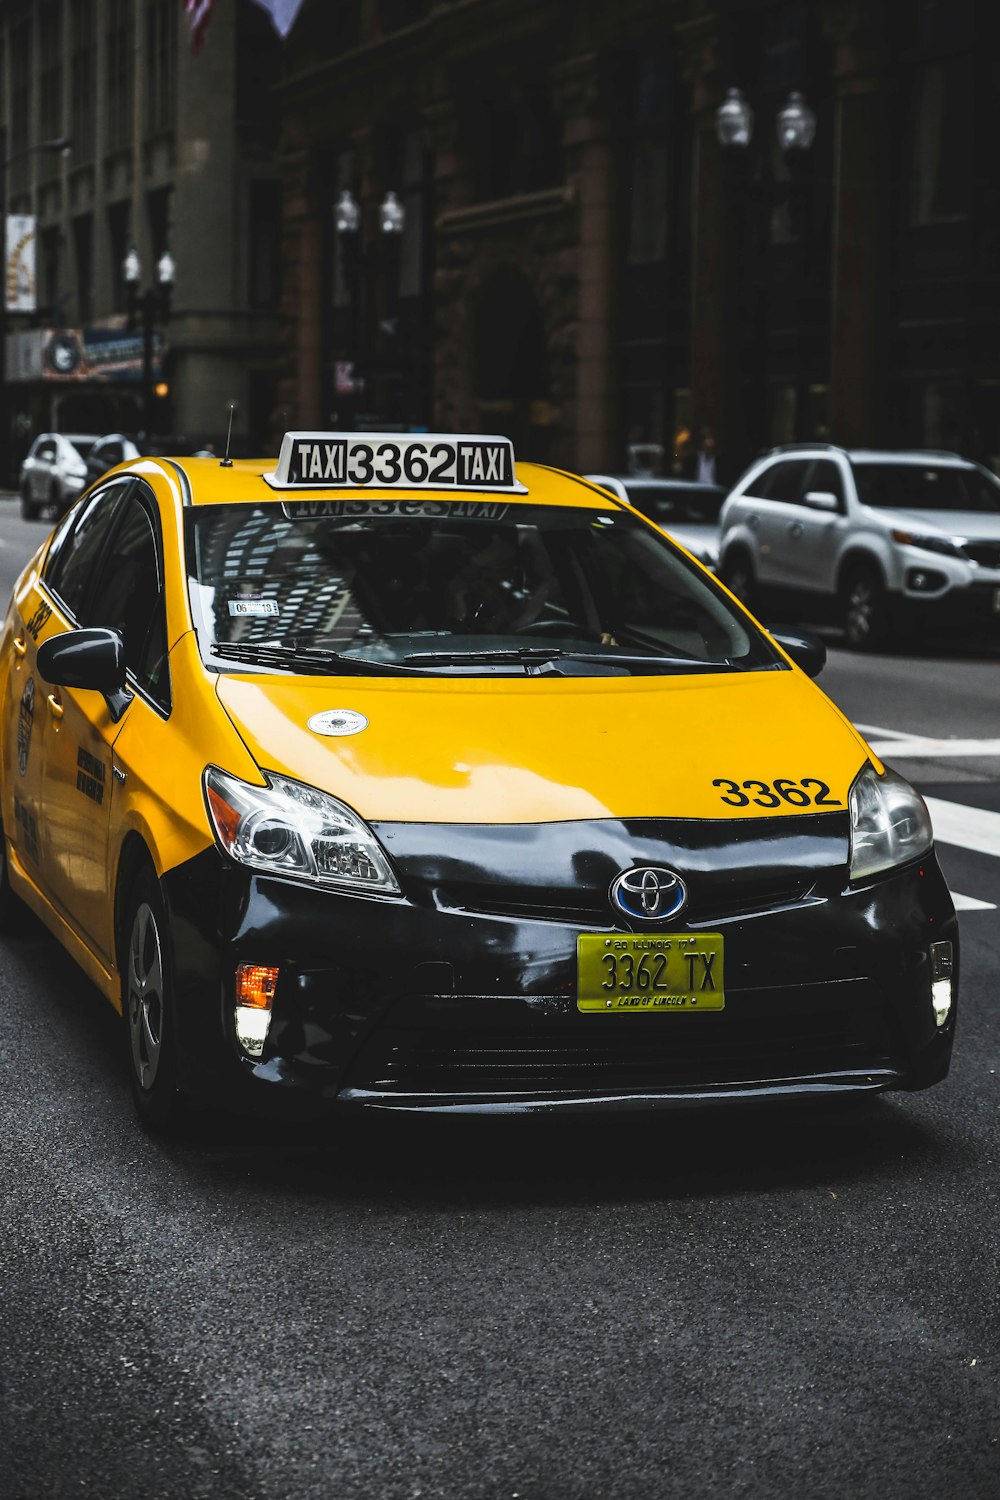 Toyota Taxi tagsüber auf der Straße in der Stadt